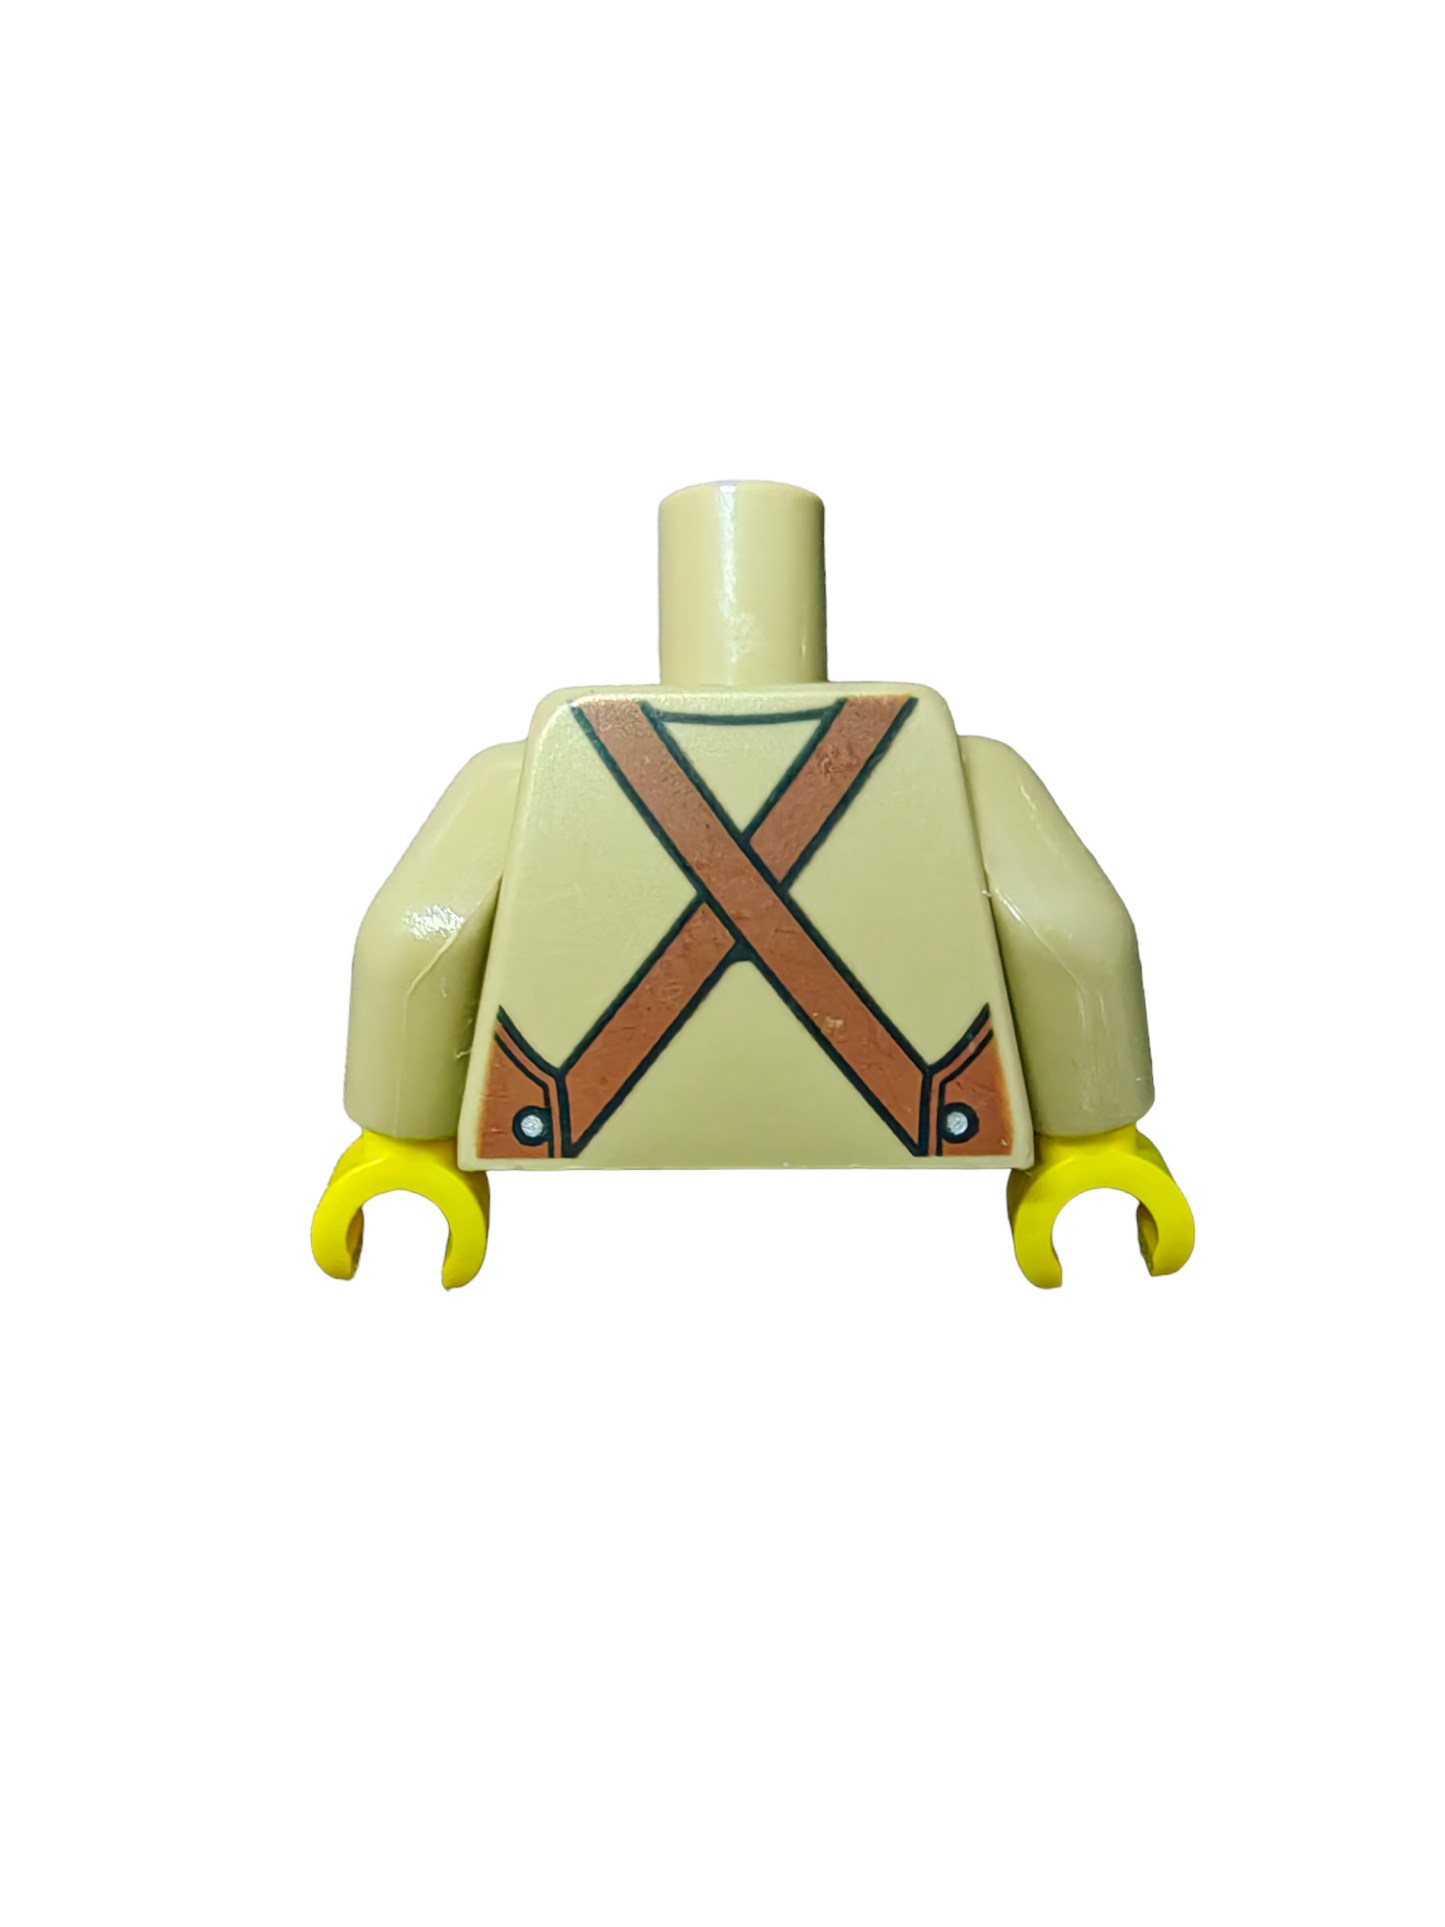 LEGO Torso, Brown Apron with Pocket over Tan Shirt - UB1432